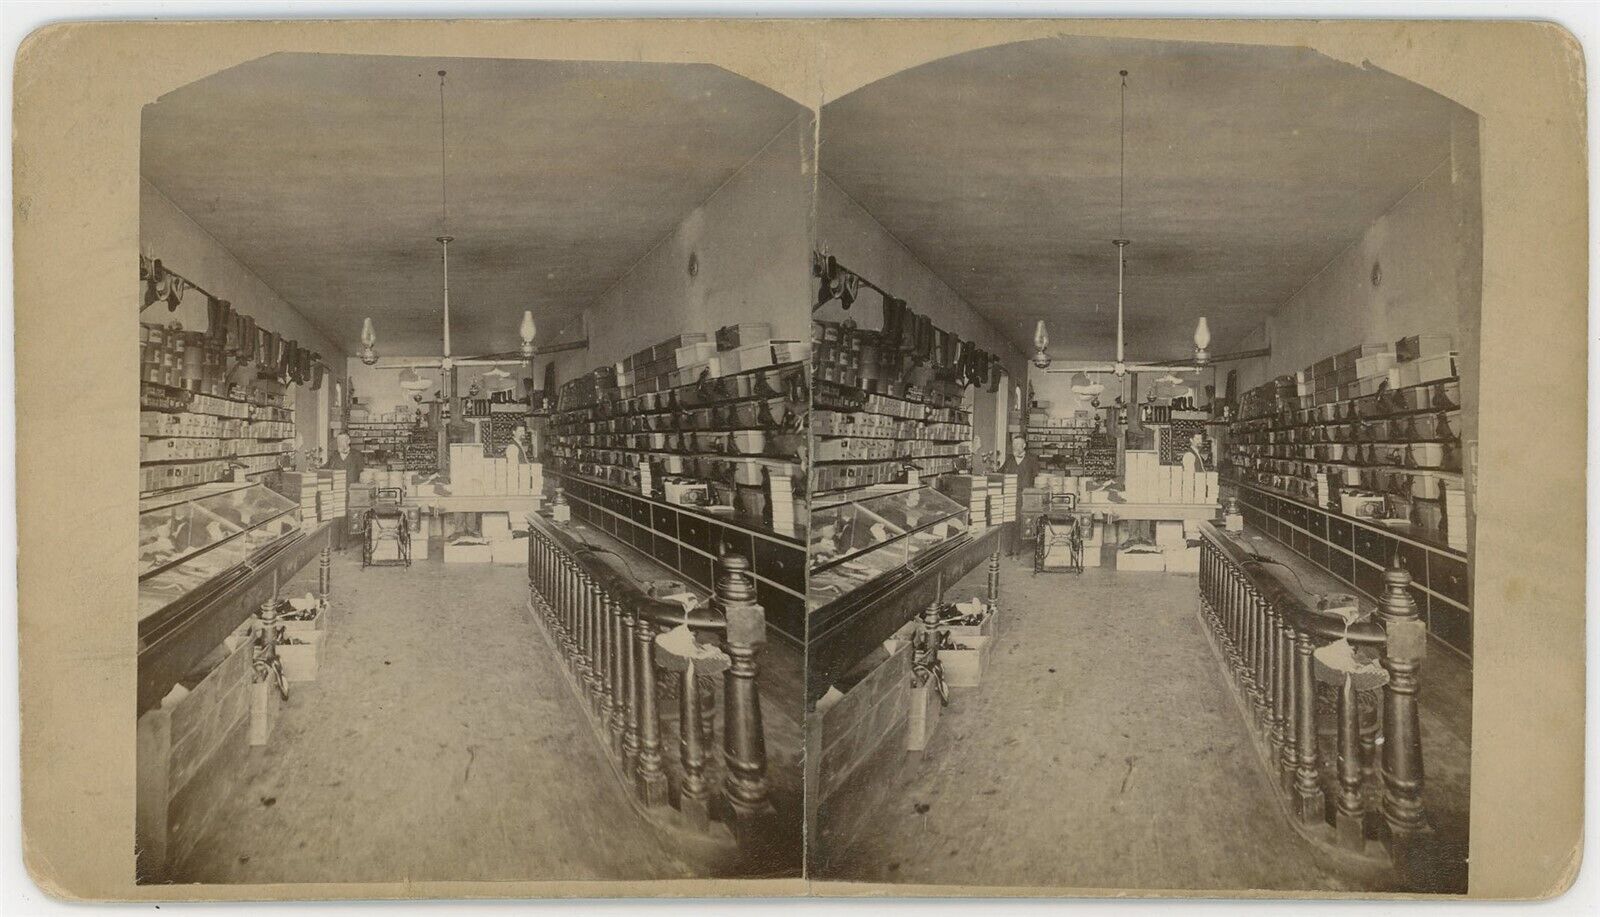 KANSAS SV - Abilene - McInerney Shoe Store Interior - 1880s/90s VERY RARE